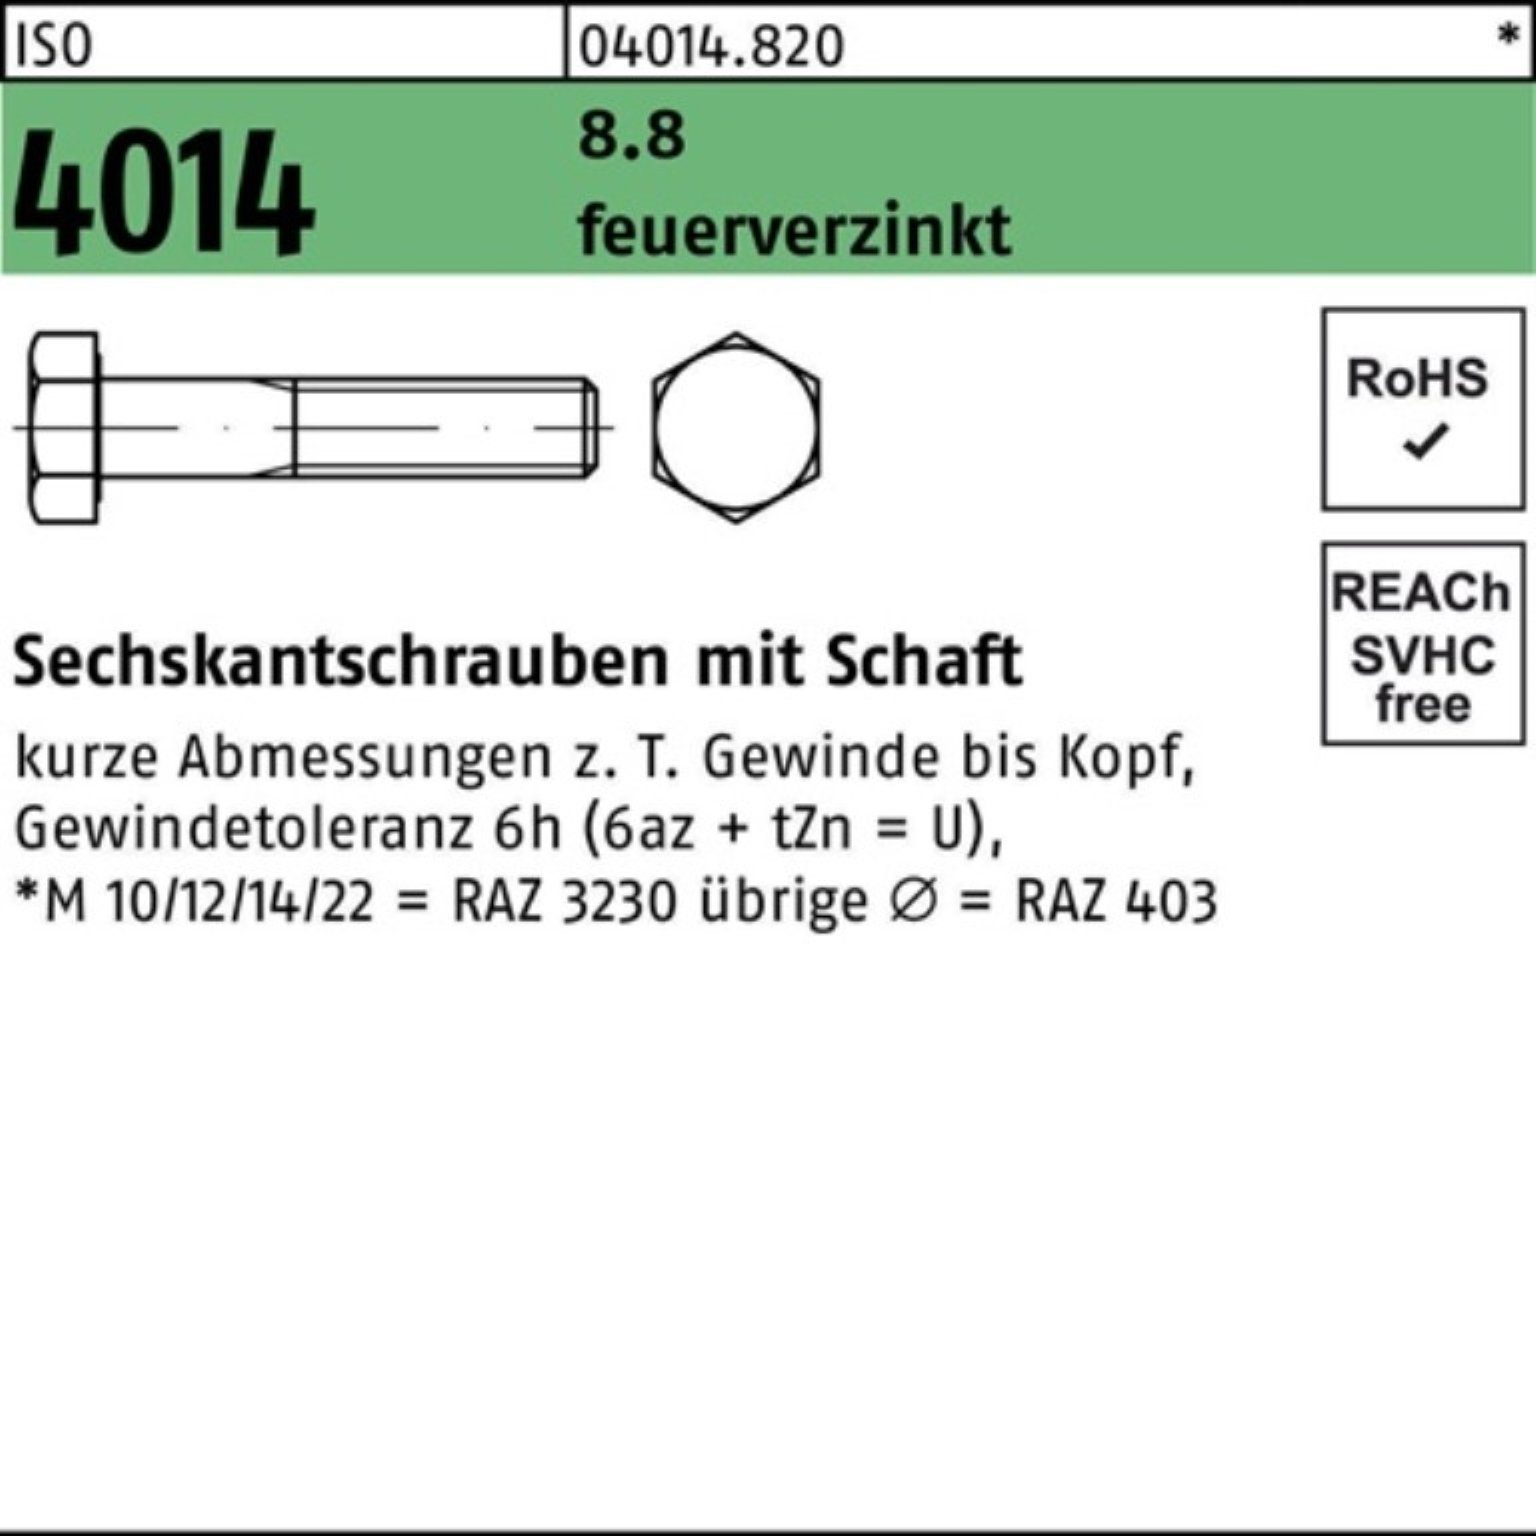 Bufab Sechskantschraube 100er Pack Sechskantschraube ISO 4014 Schaft M20x 65 8.8 feuerverz. 25